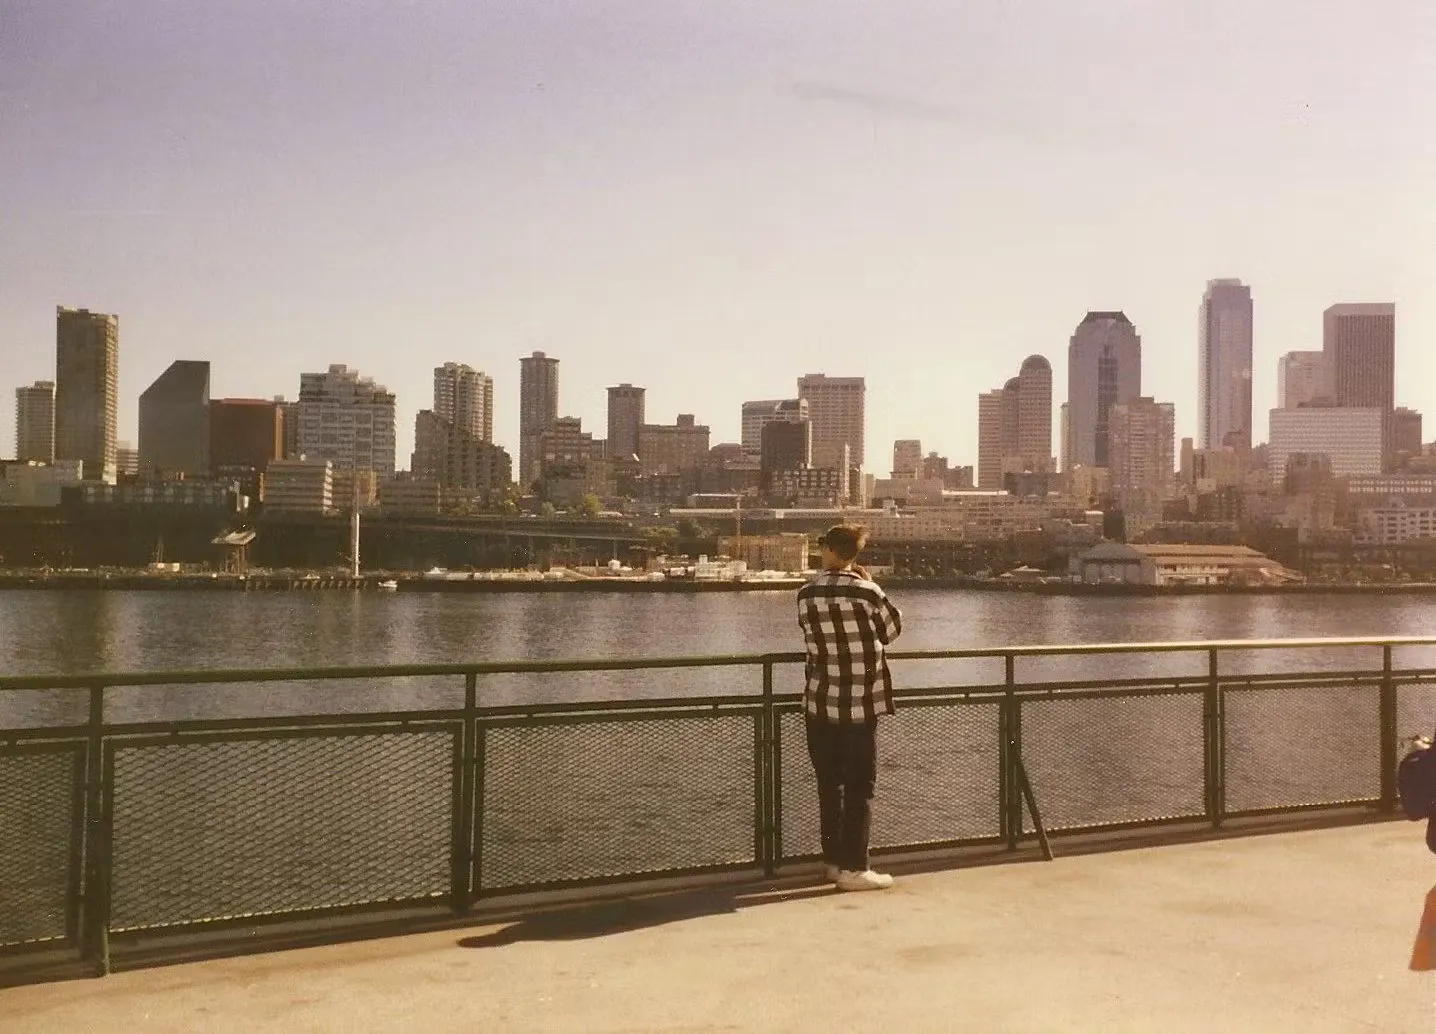 Me on Bainbridge Island ferry in Seattle, 1996